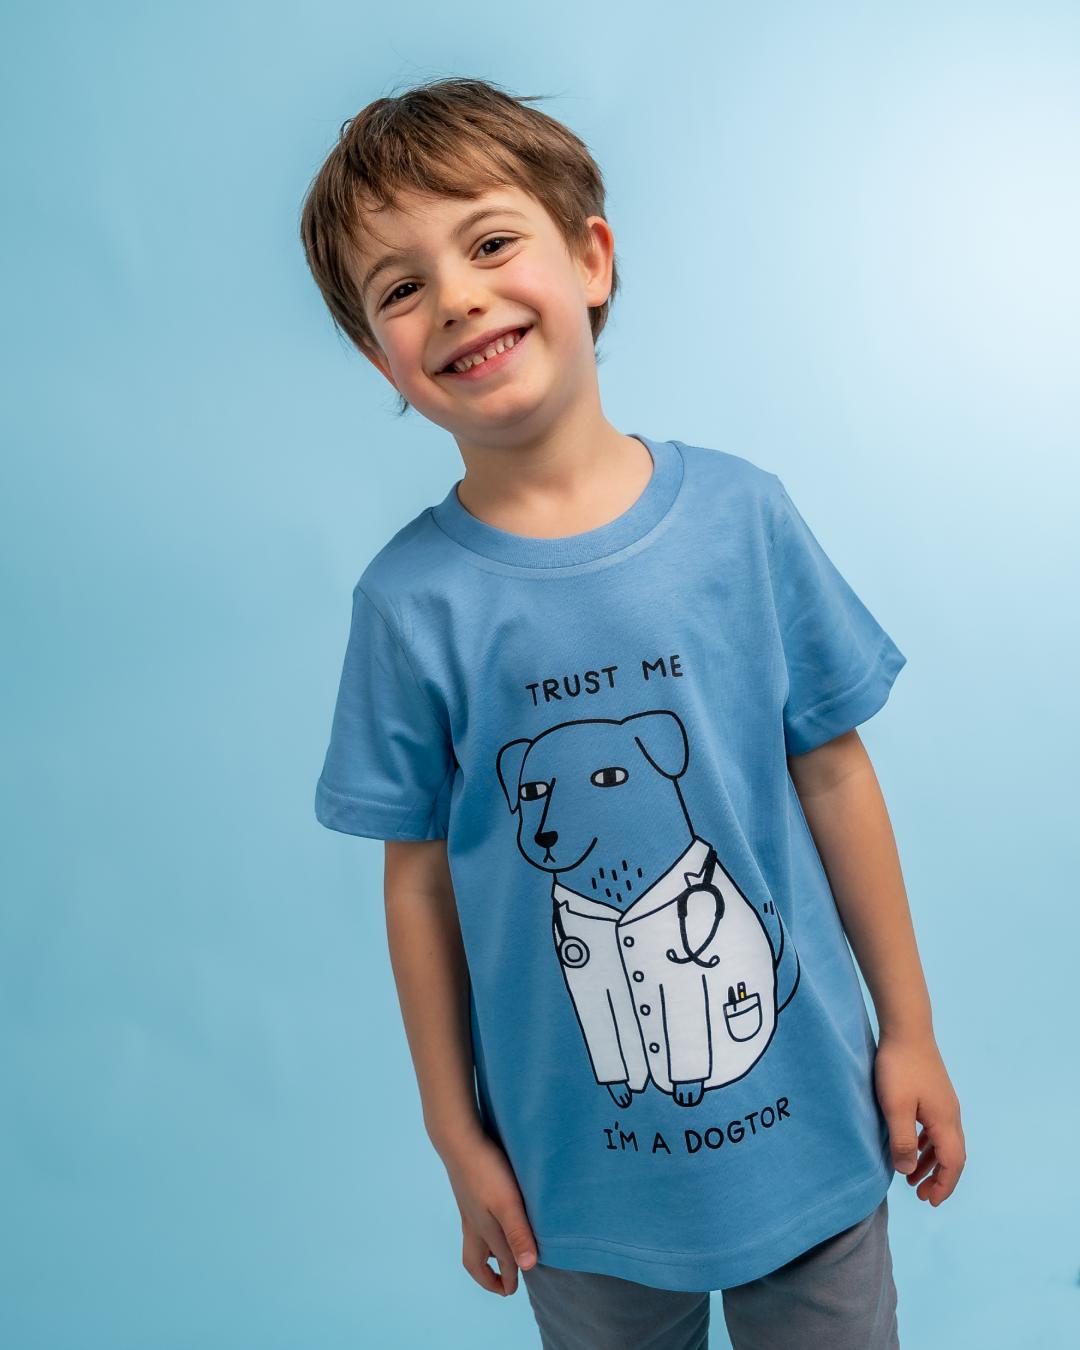 Dogtor Kids T-Shirt Australia Online #colour_pale blue